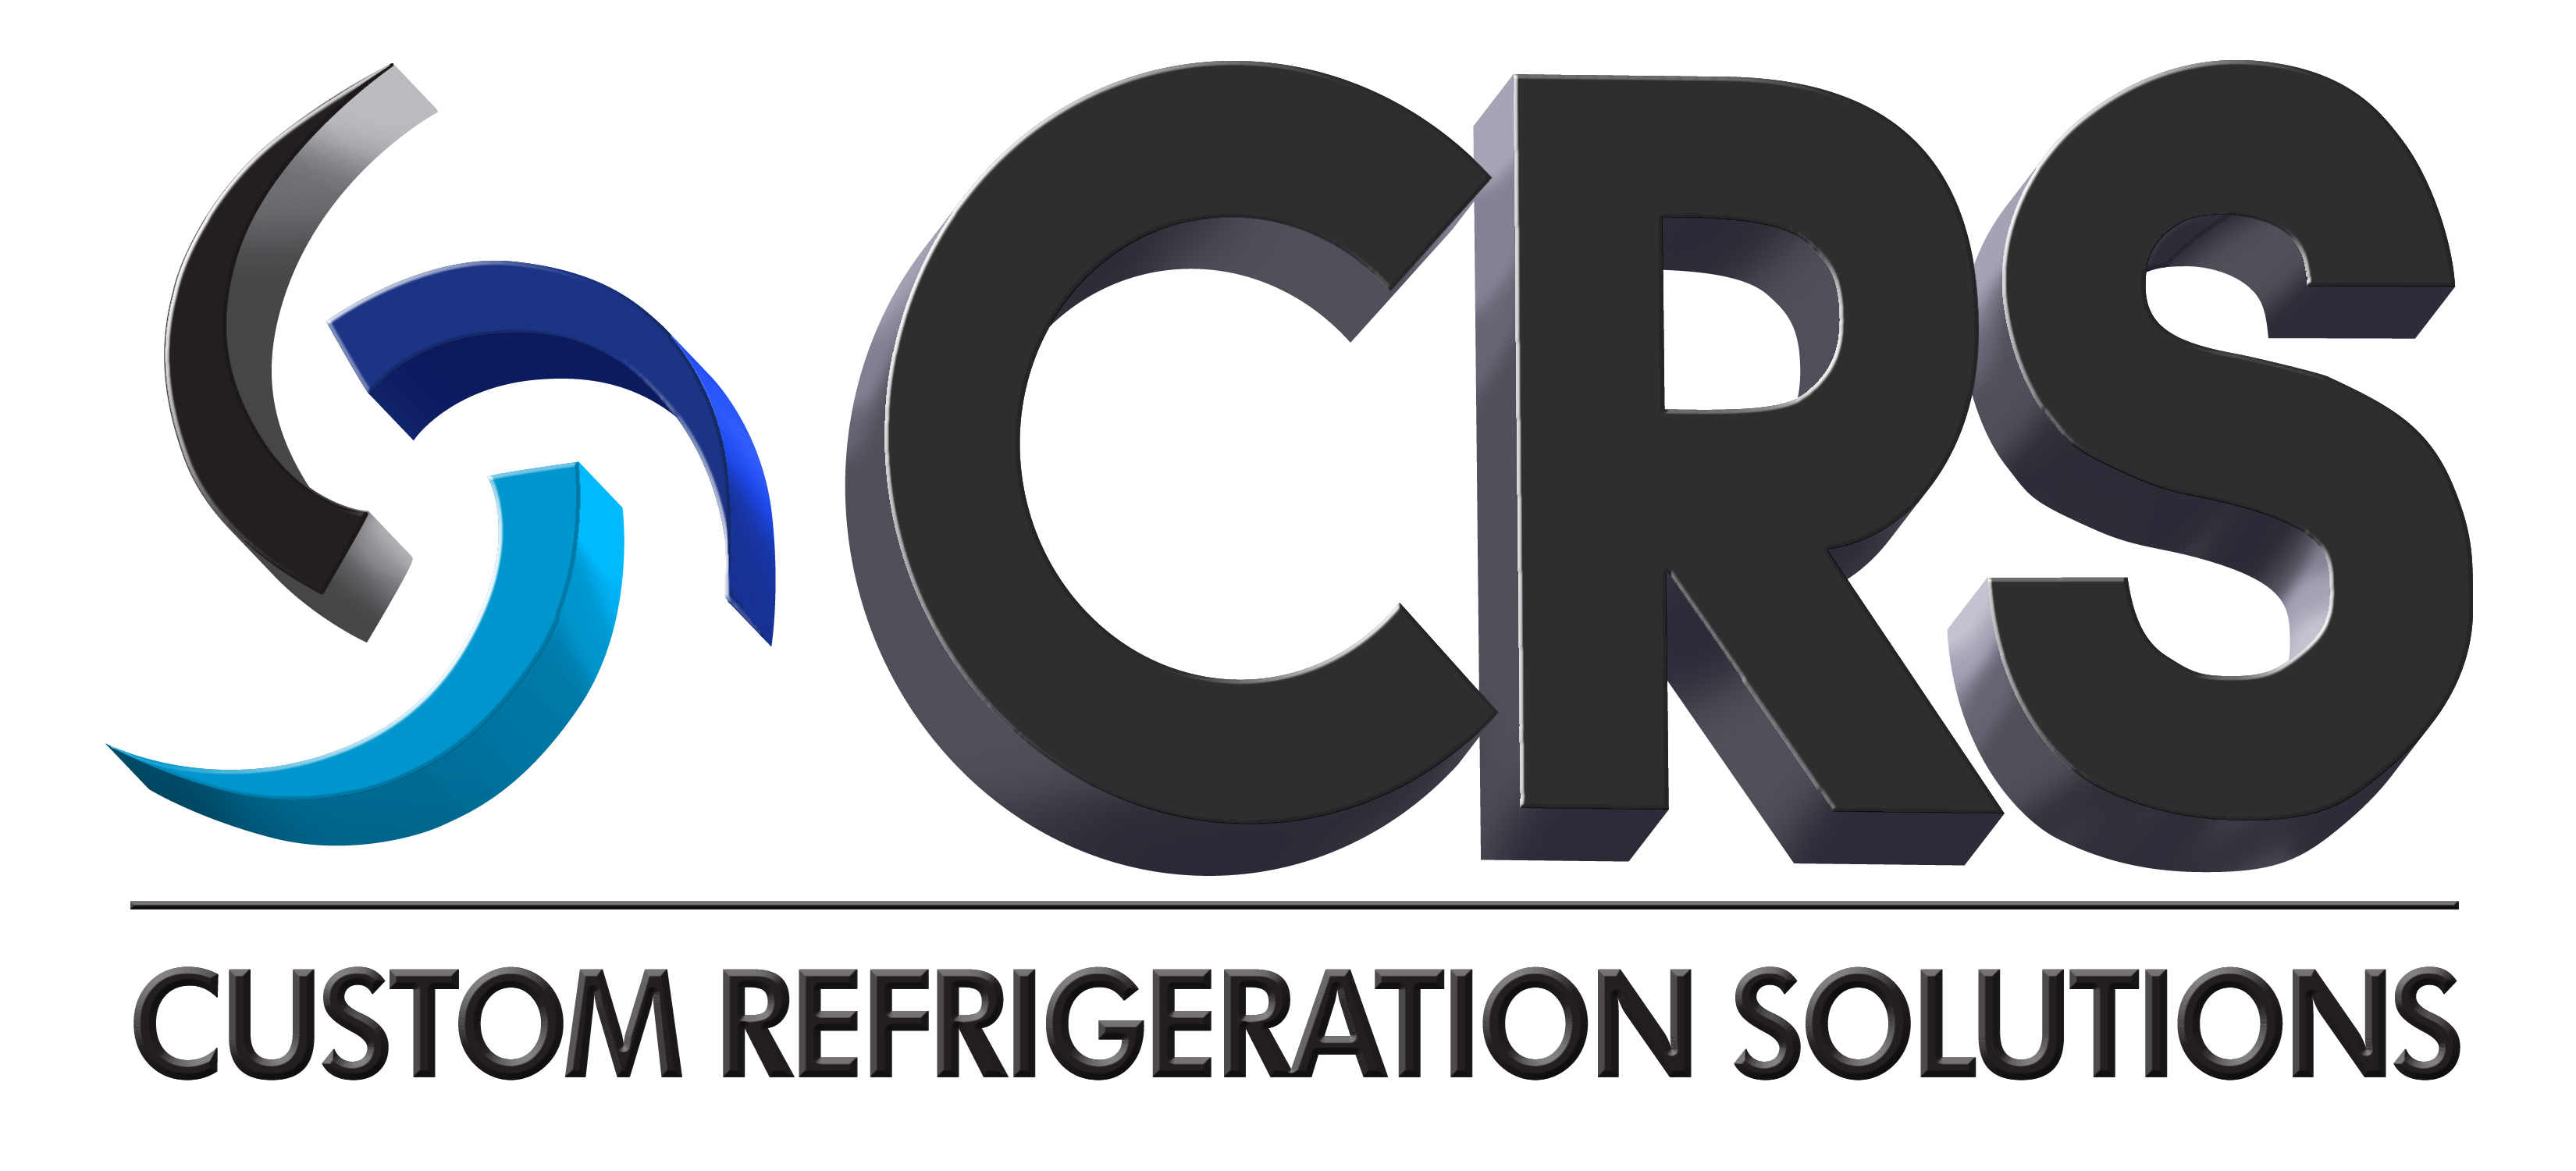 Custom Refrigeration Solutions